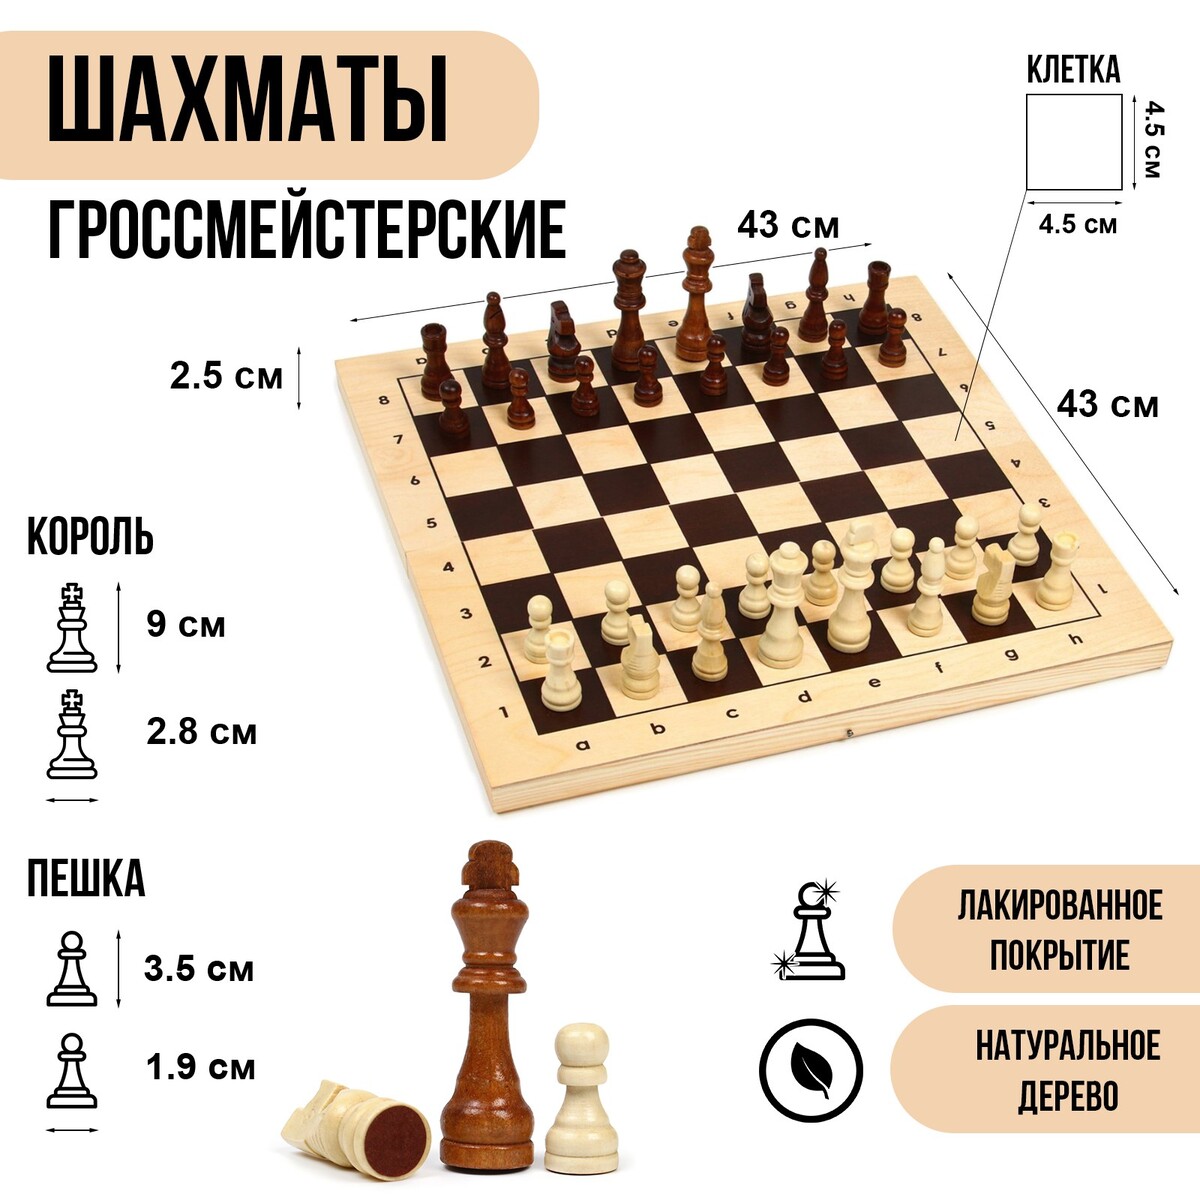 Шахматы деревянные гроссмейстерские, турнирные 43 х 43 см, король h-9 см, пешка h-3.5 см железный король